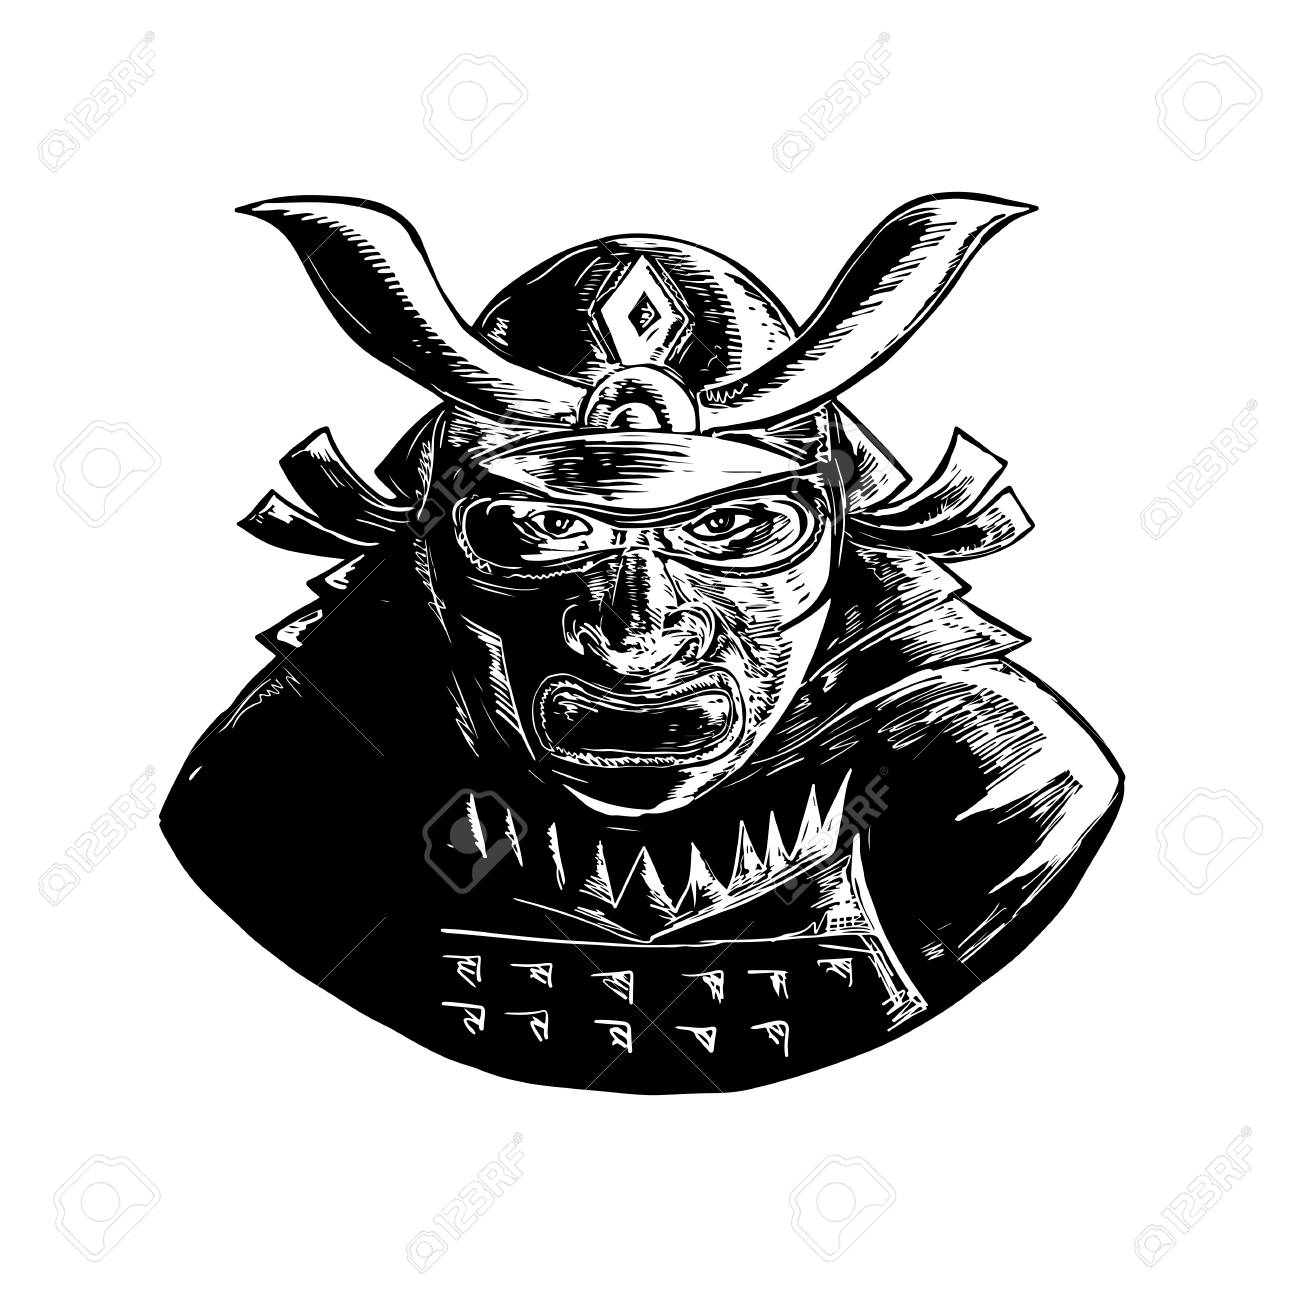 Samurai Helmet Drawing at GetDrawings | Free download